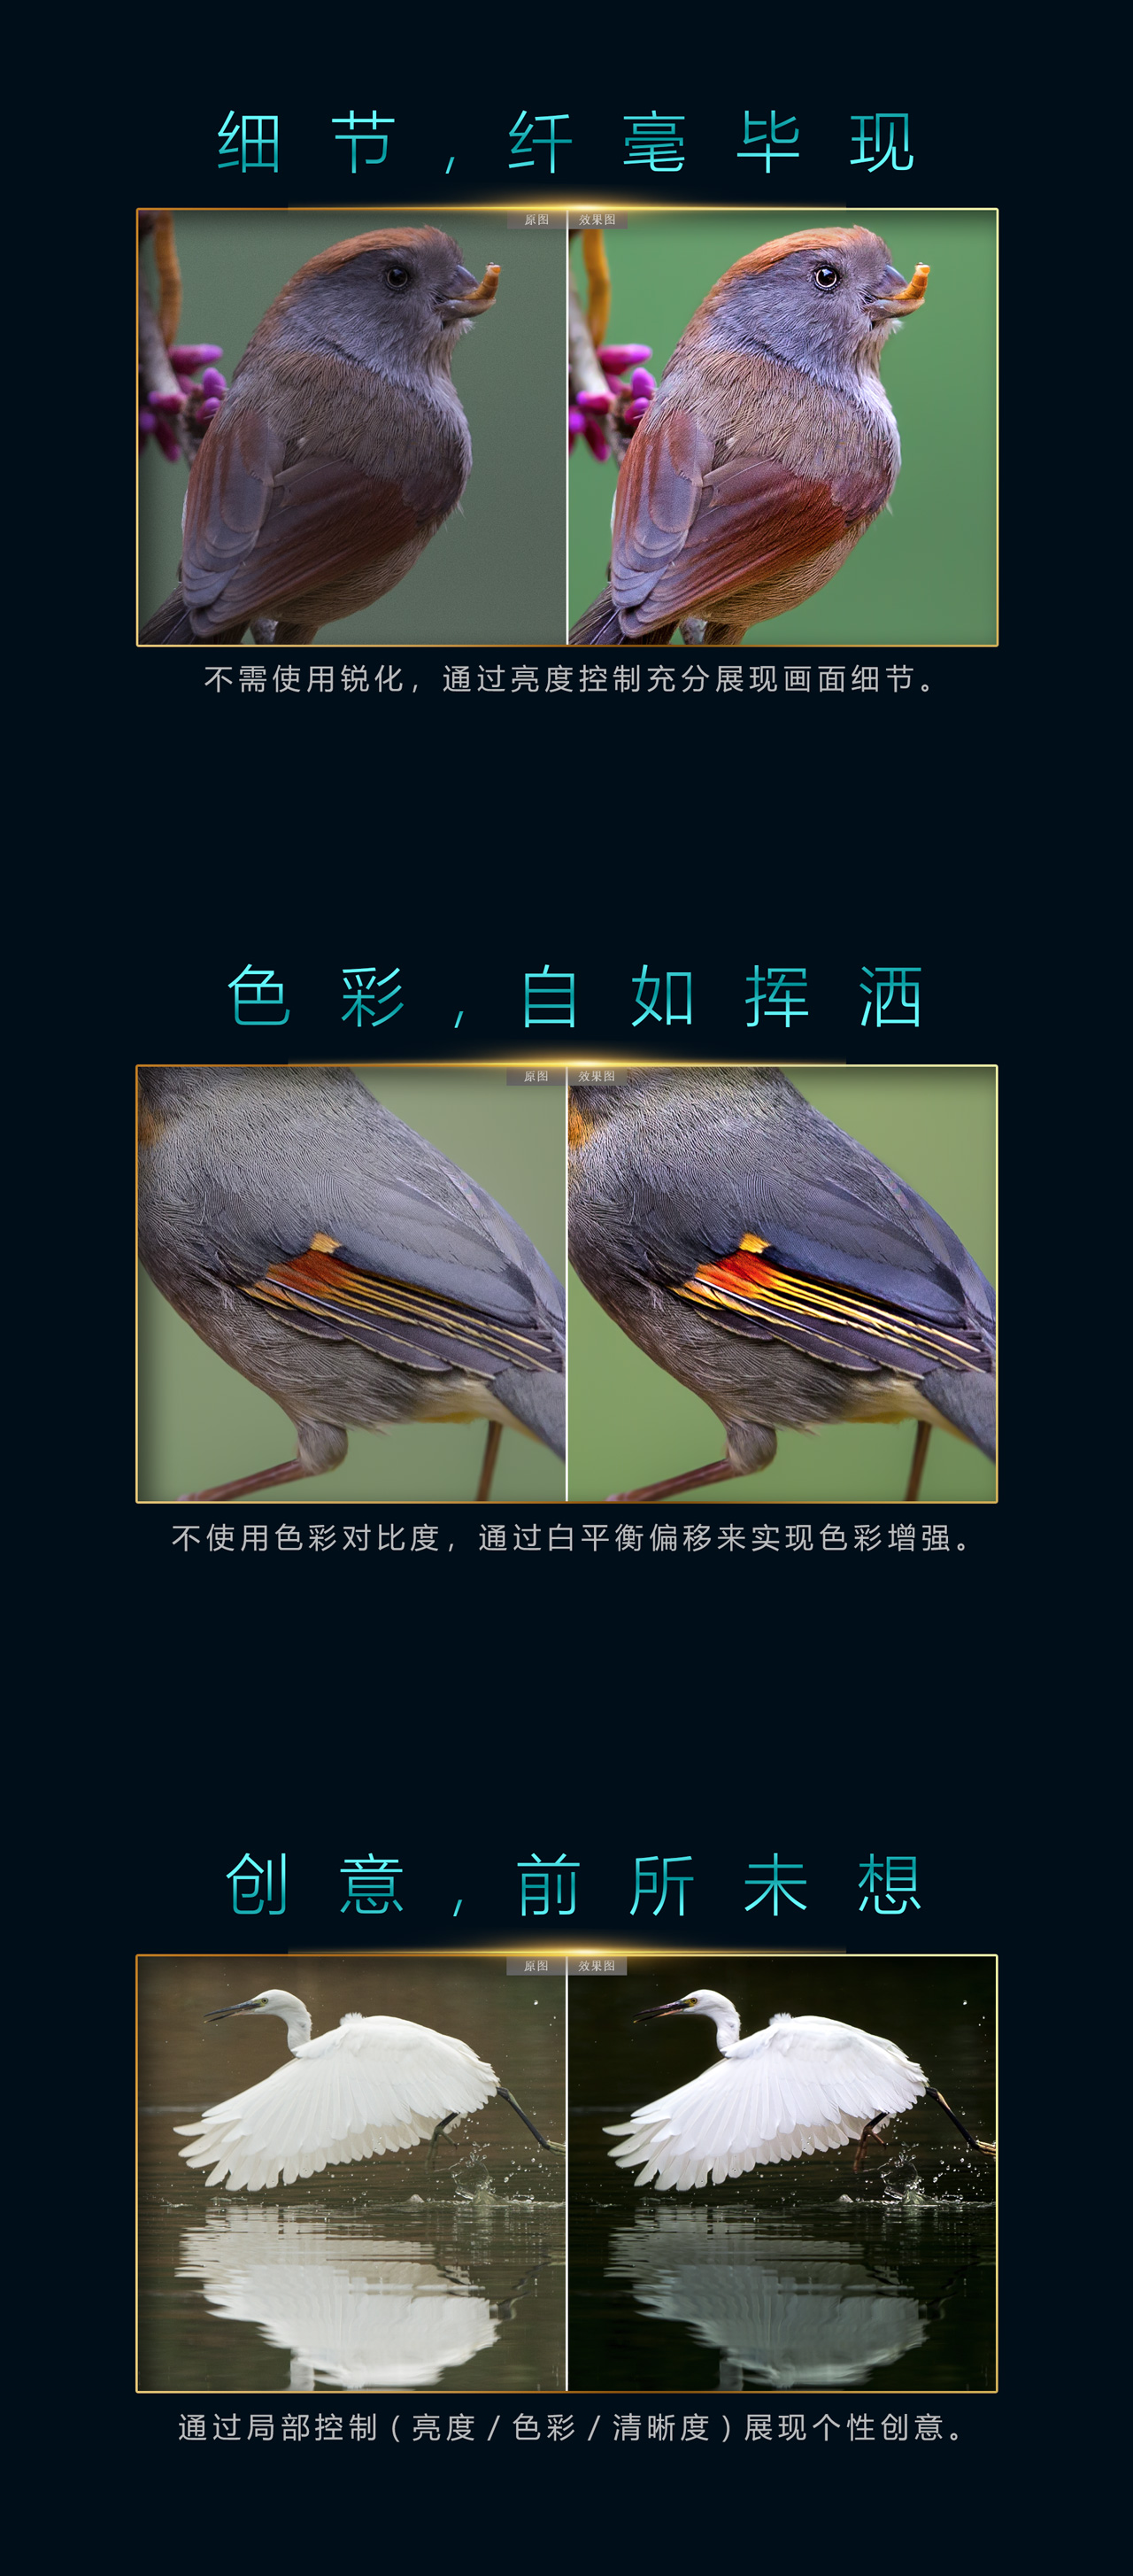 zero_bird_mobile01_02.jpg